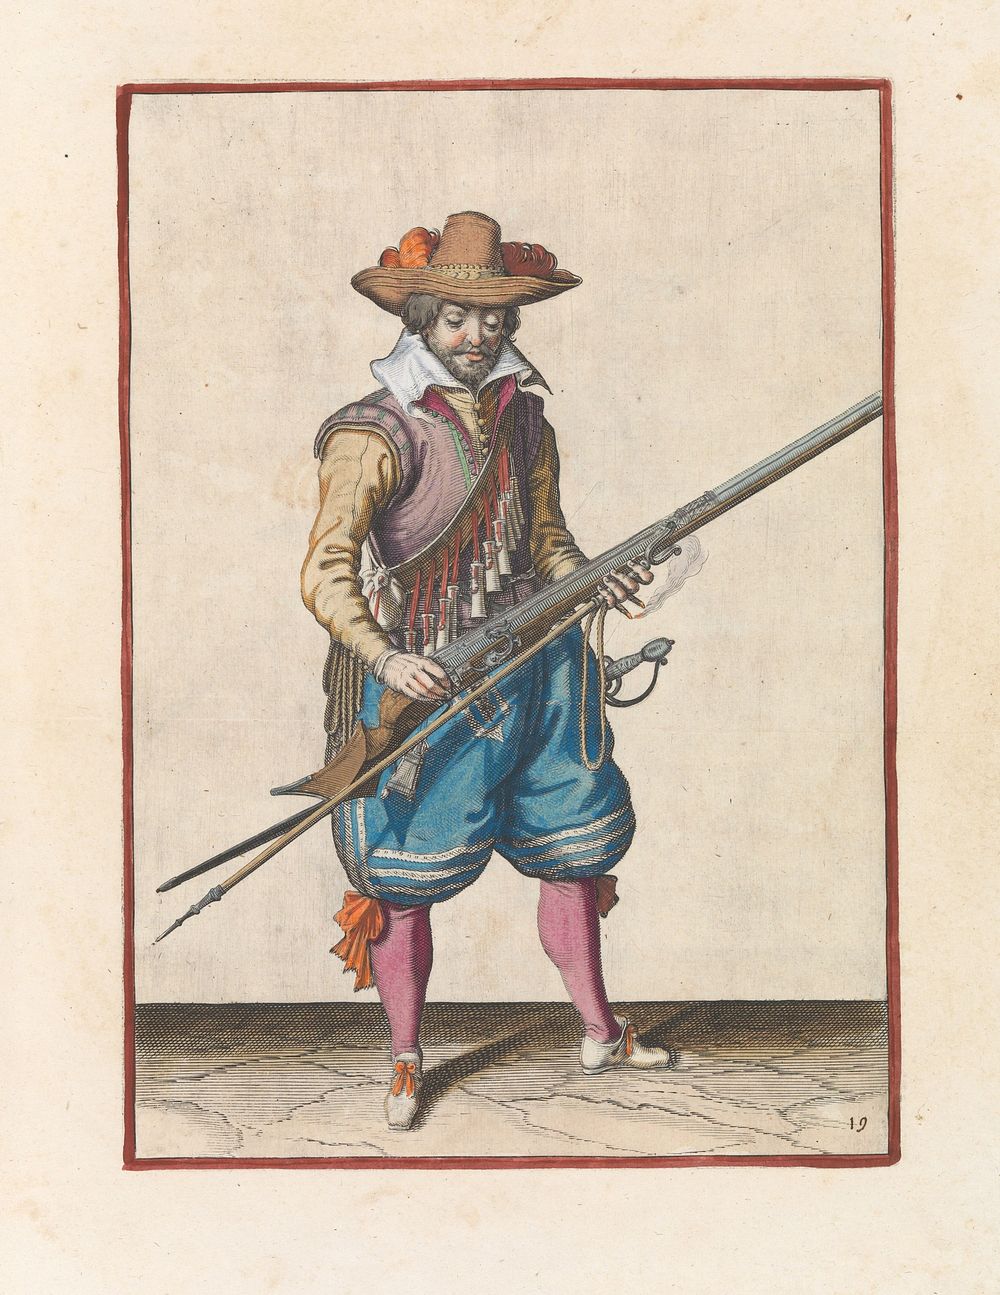 Soldaat die kruit van zijn musket schudt (c. 1597 - 1607) by Jacques de Gheyn II and Jacques de Gheyn II